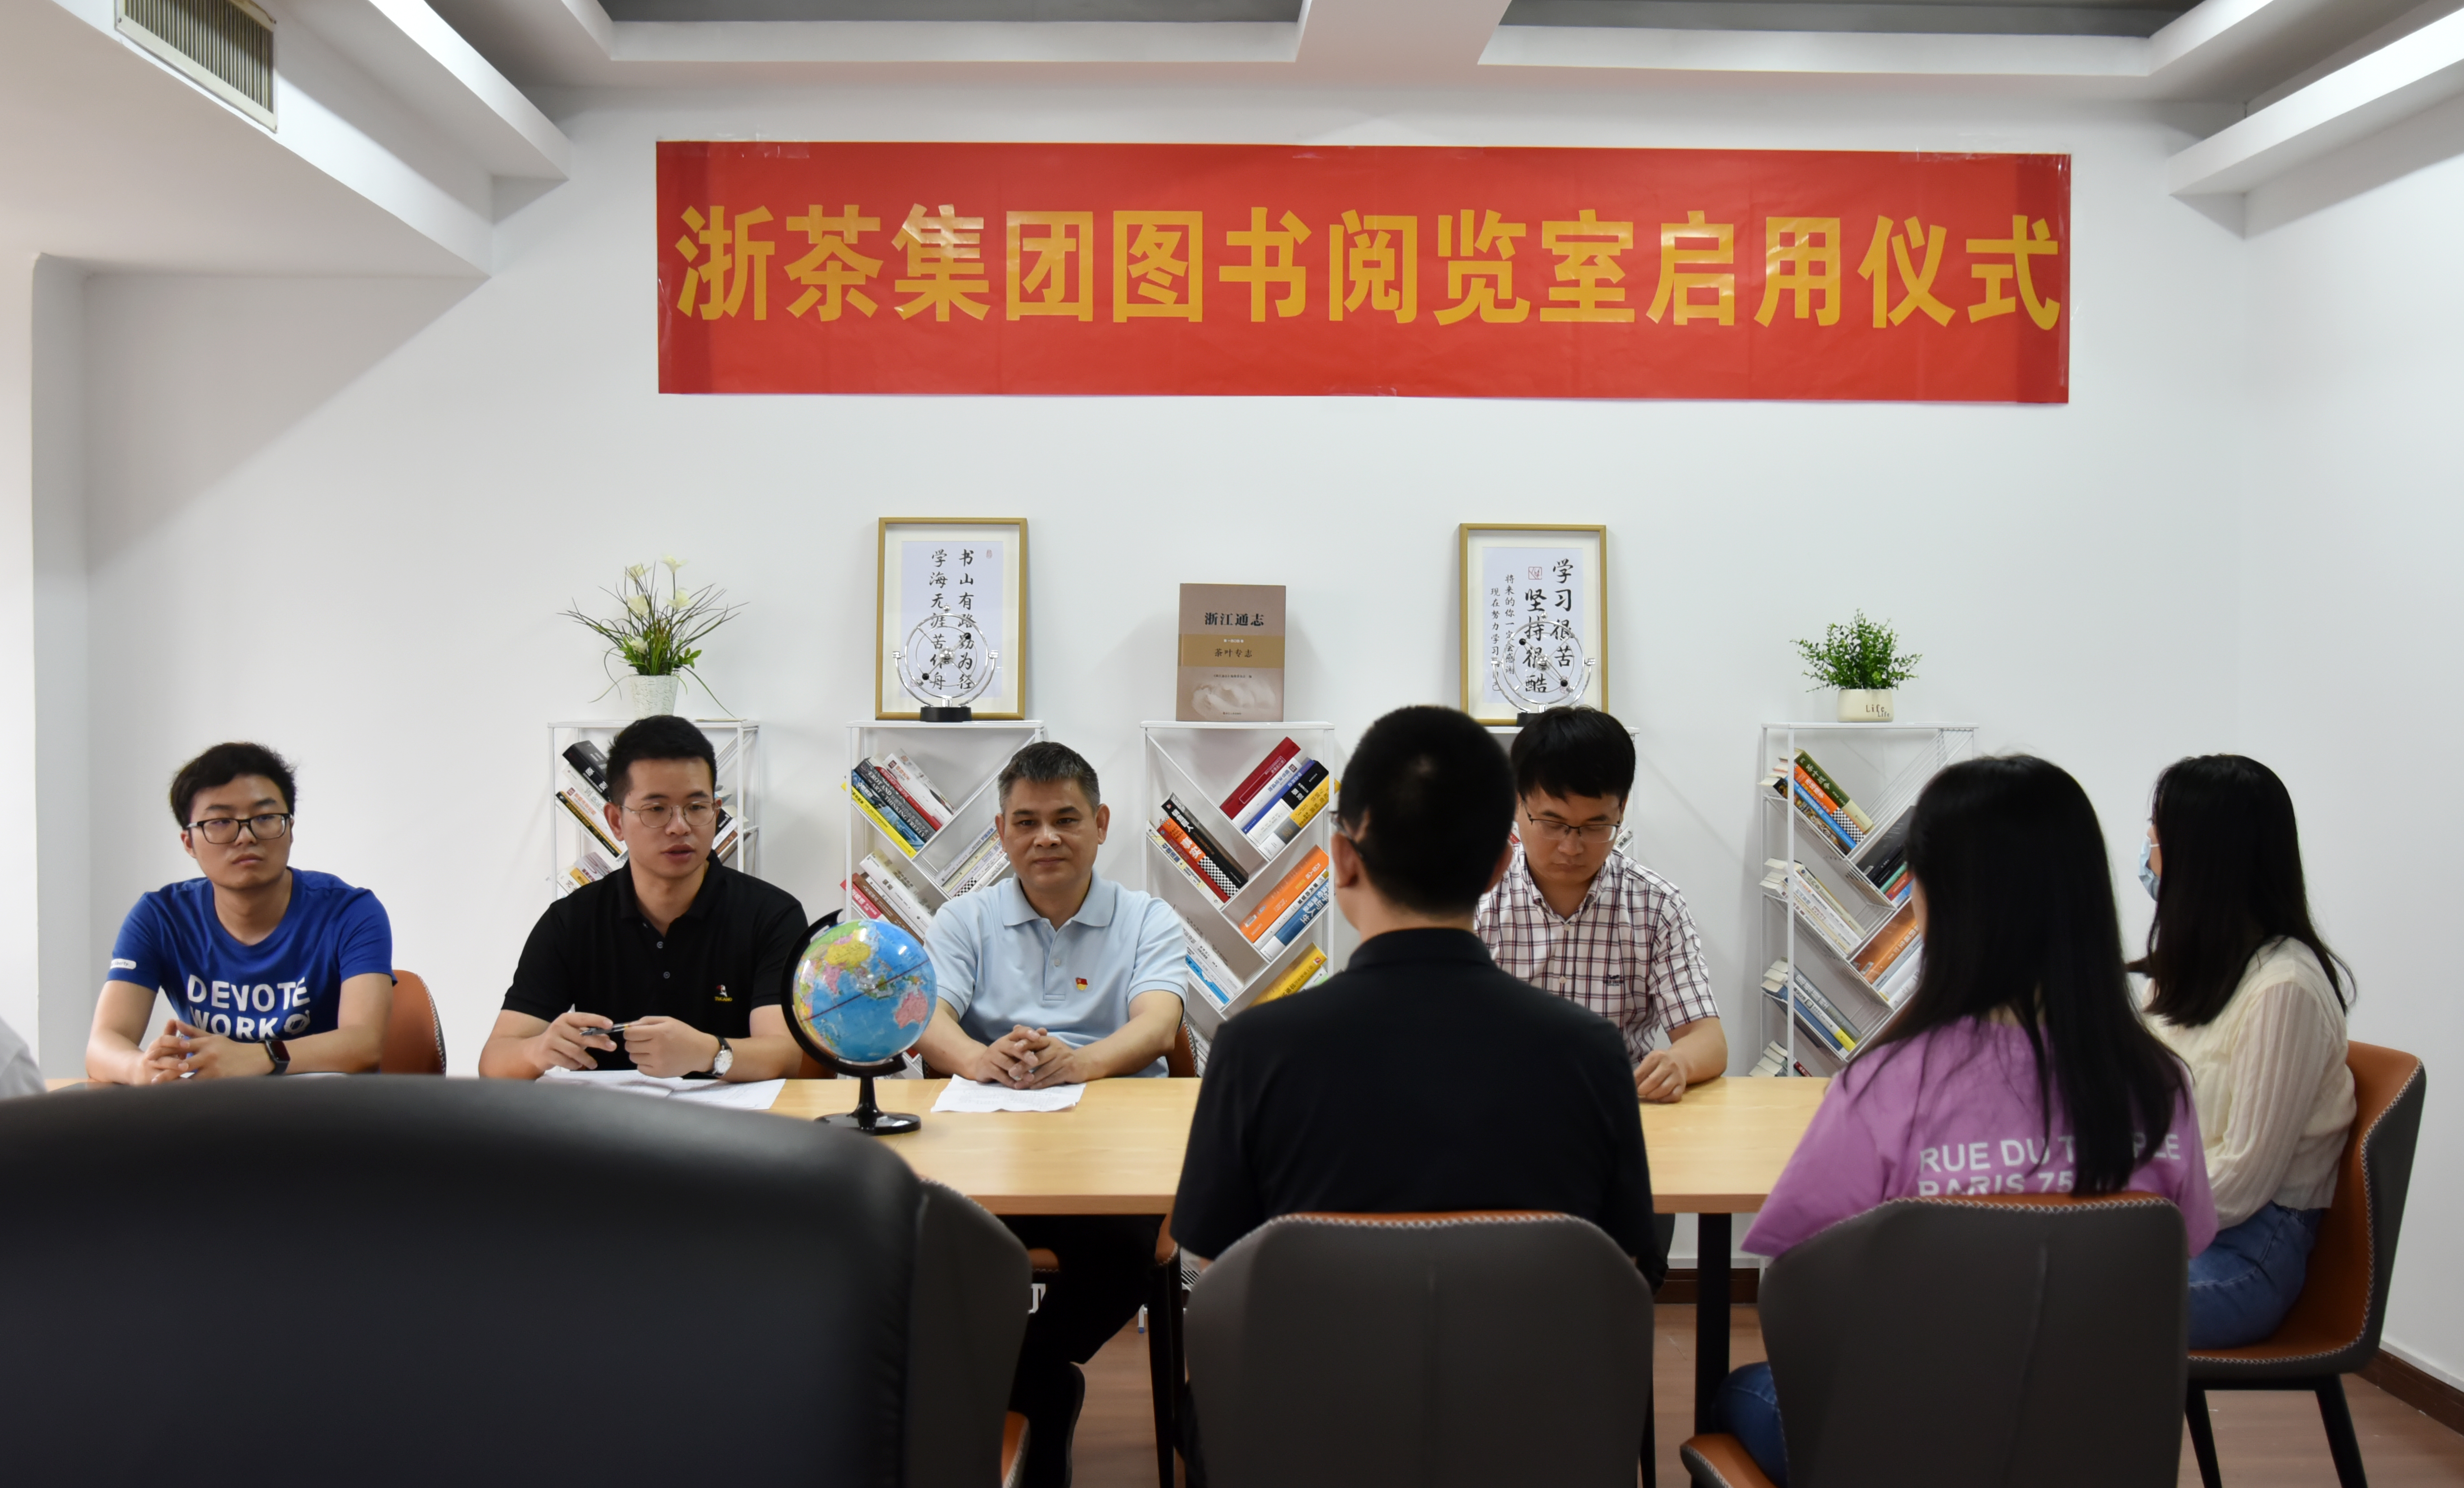 LD官方电竞(中国)有限公司官网图书阅览室启用仪式顺利举行